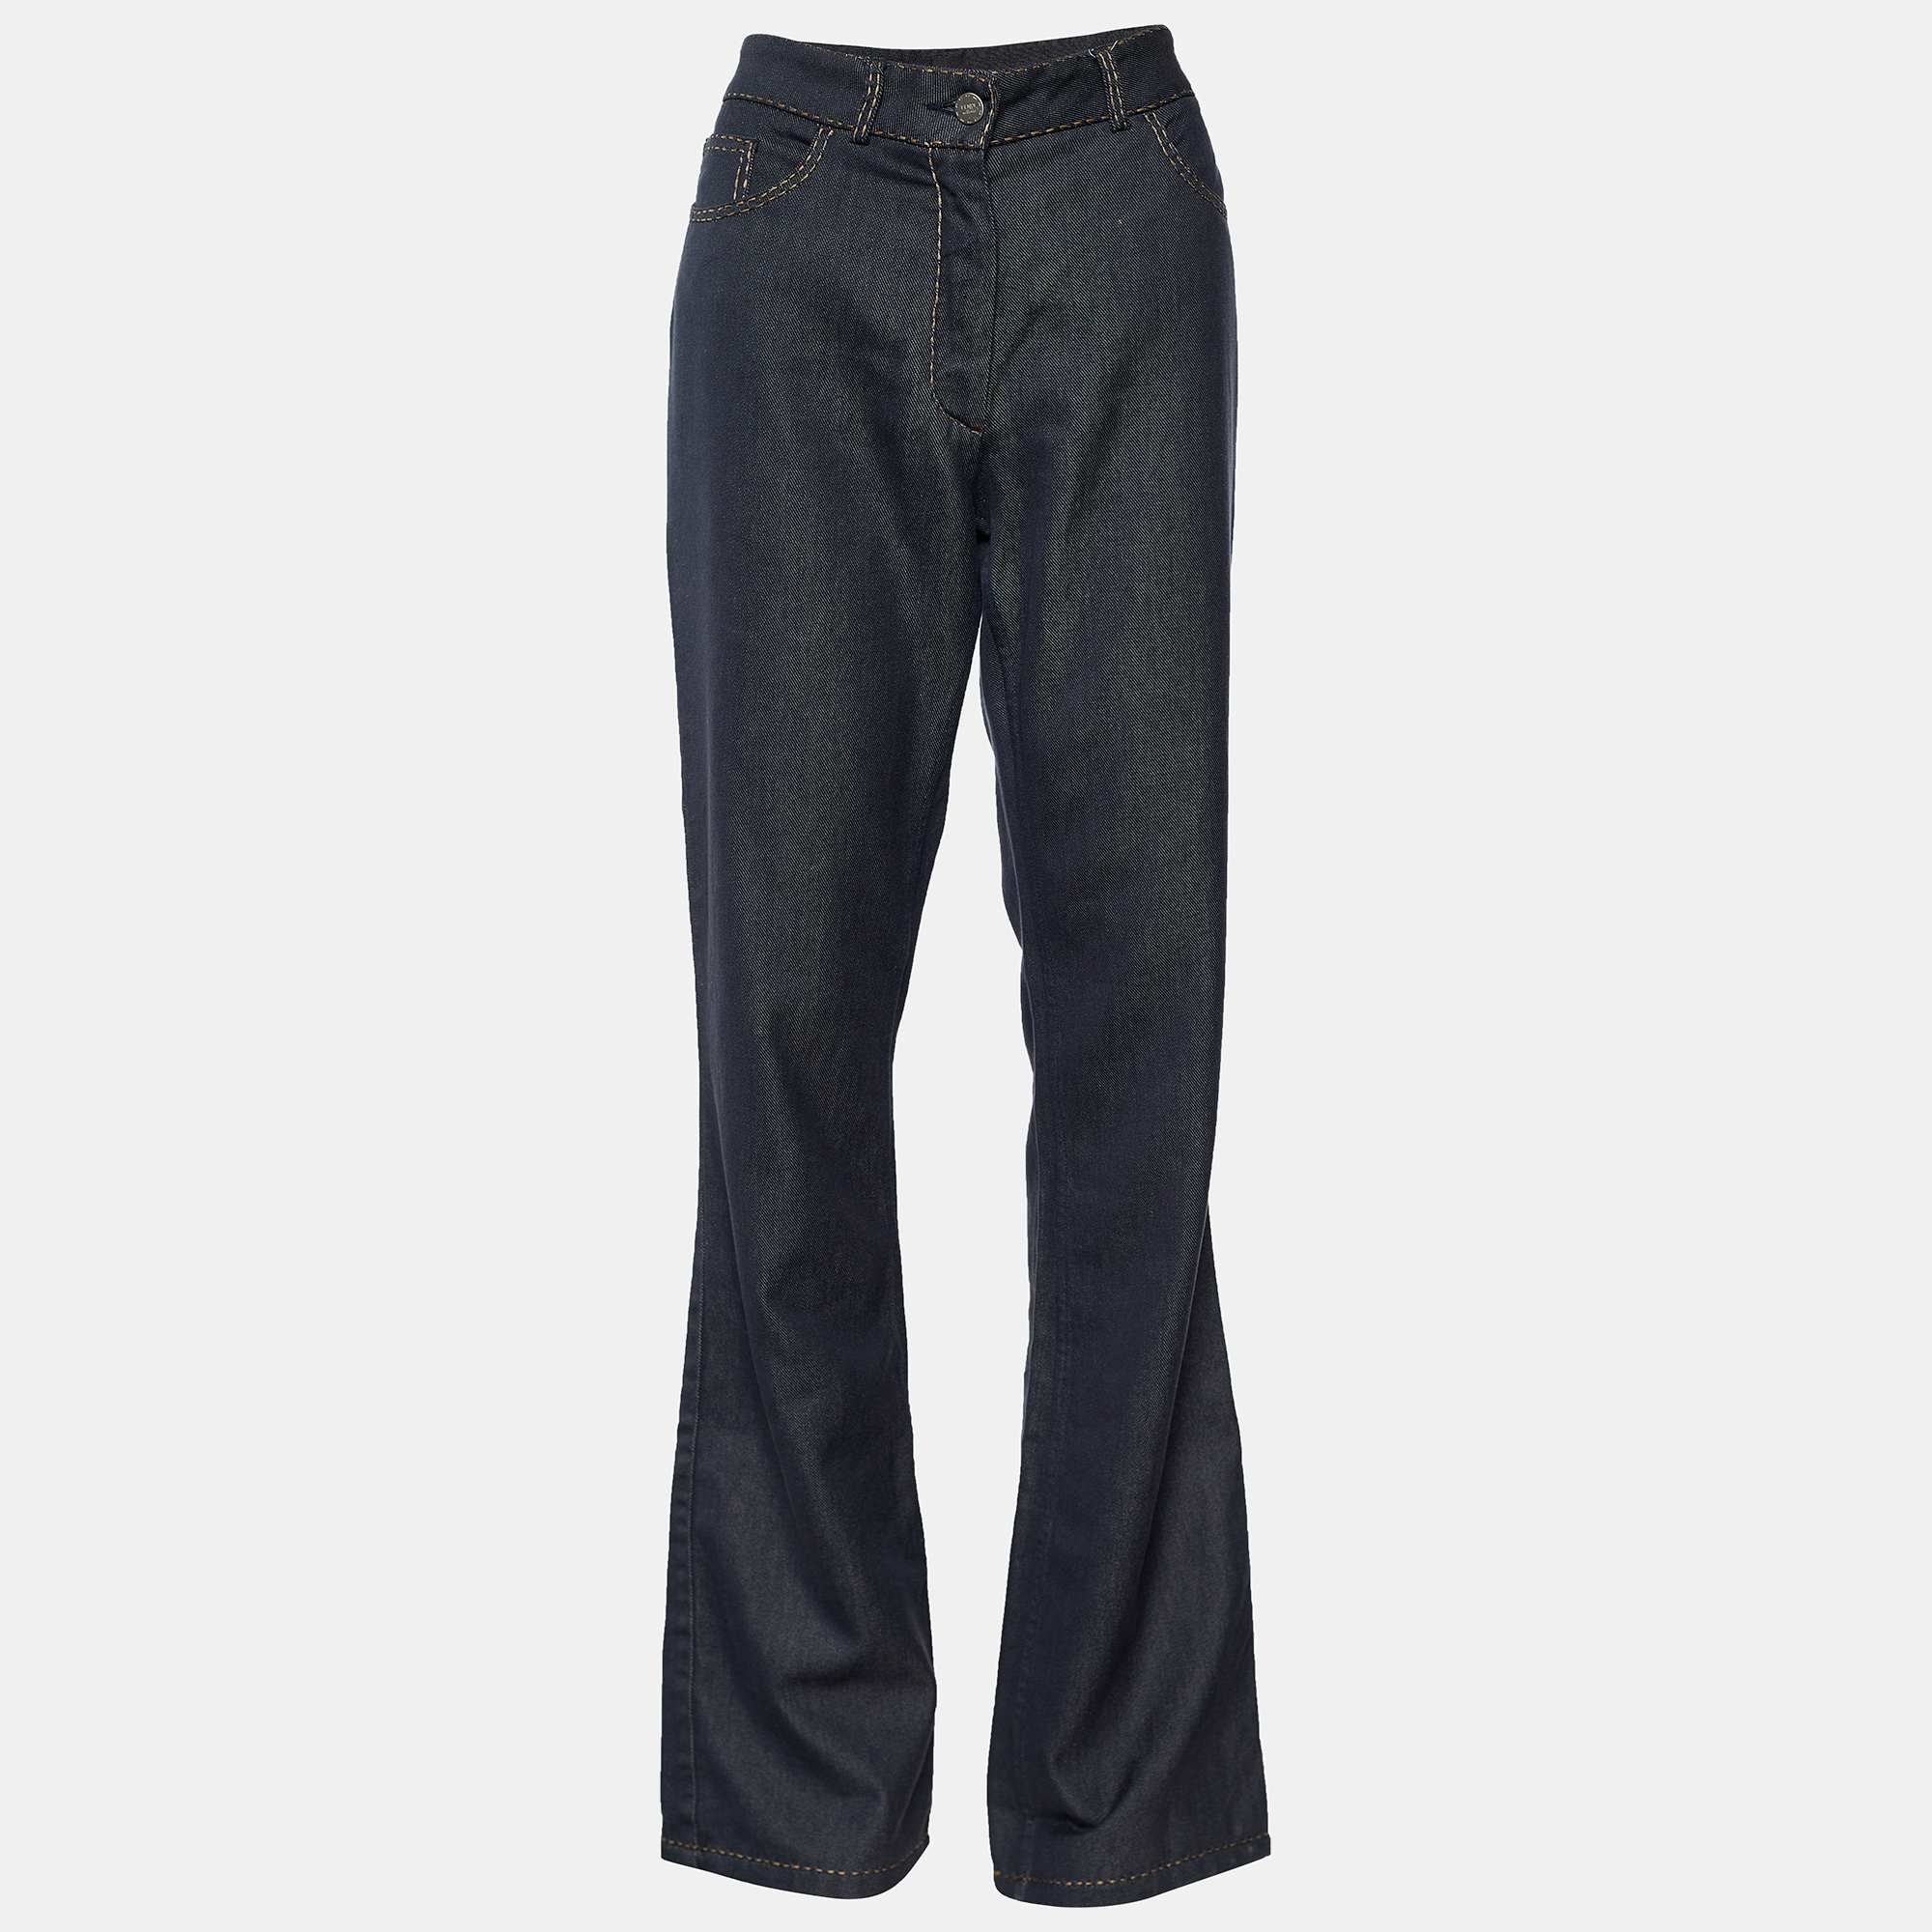 Fendi black denim boot cut jeans m/waist 32"